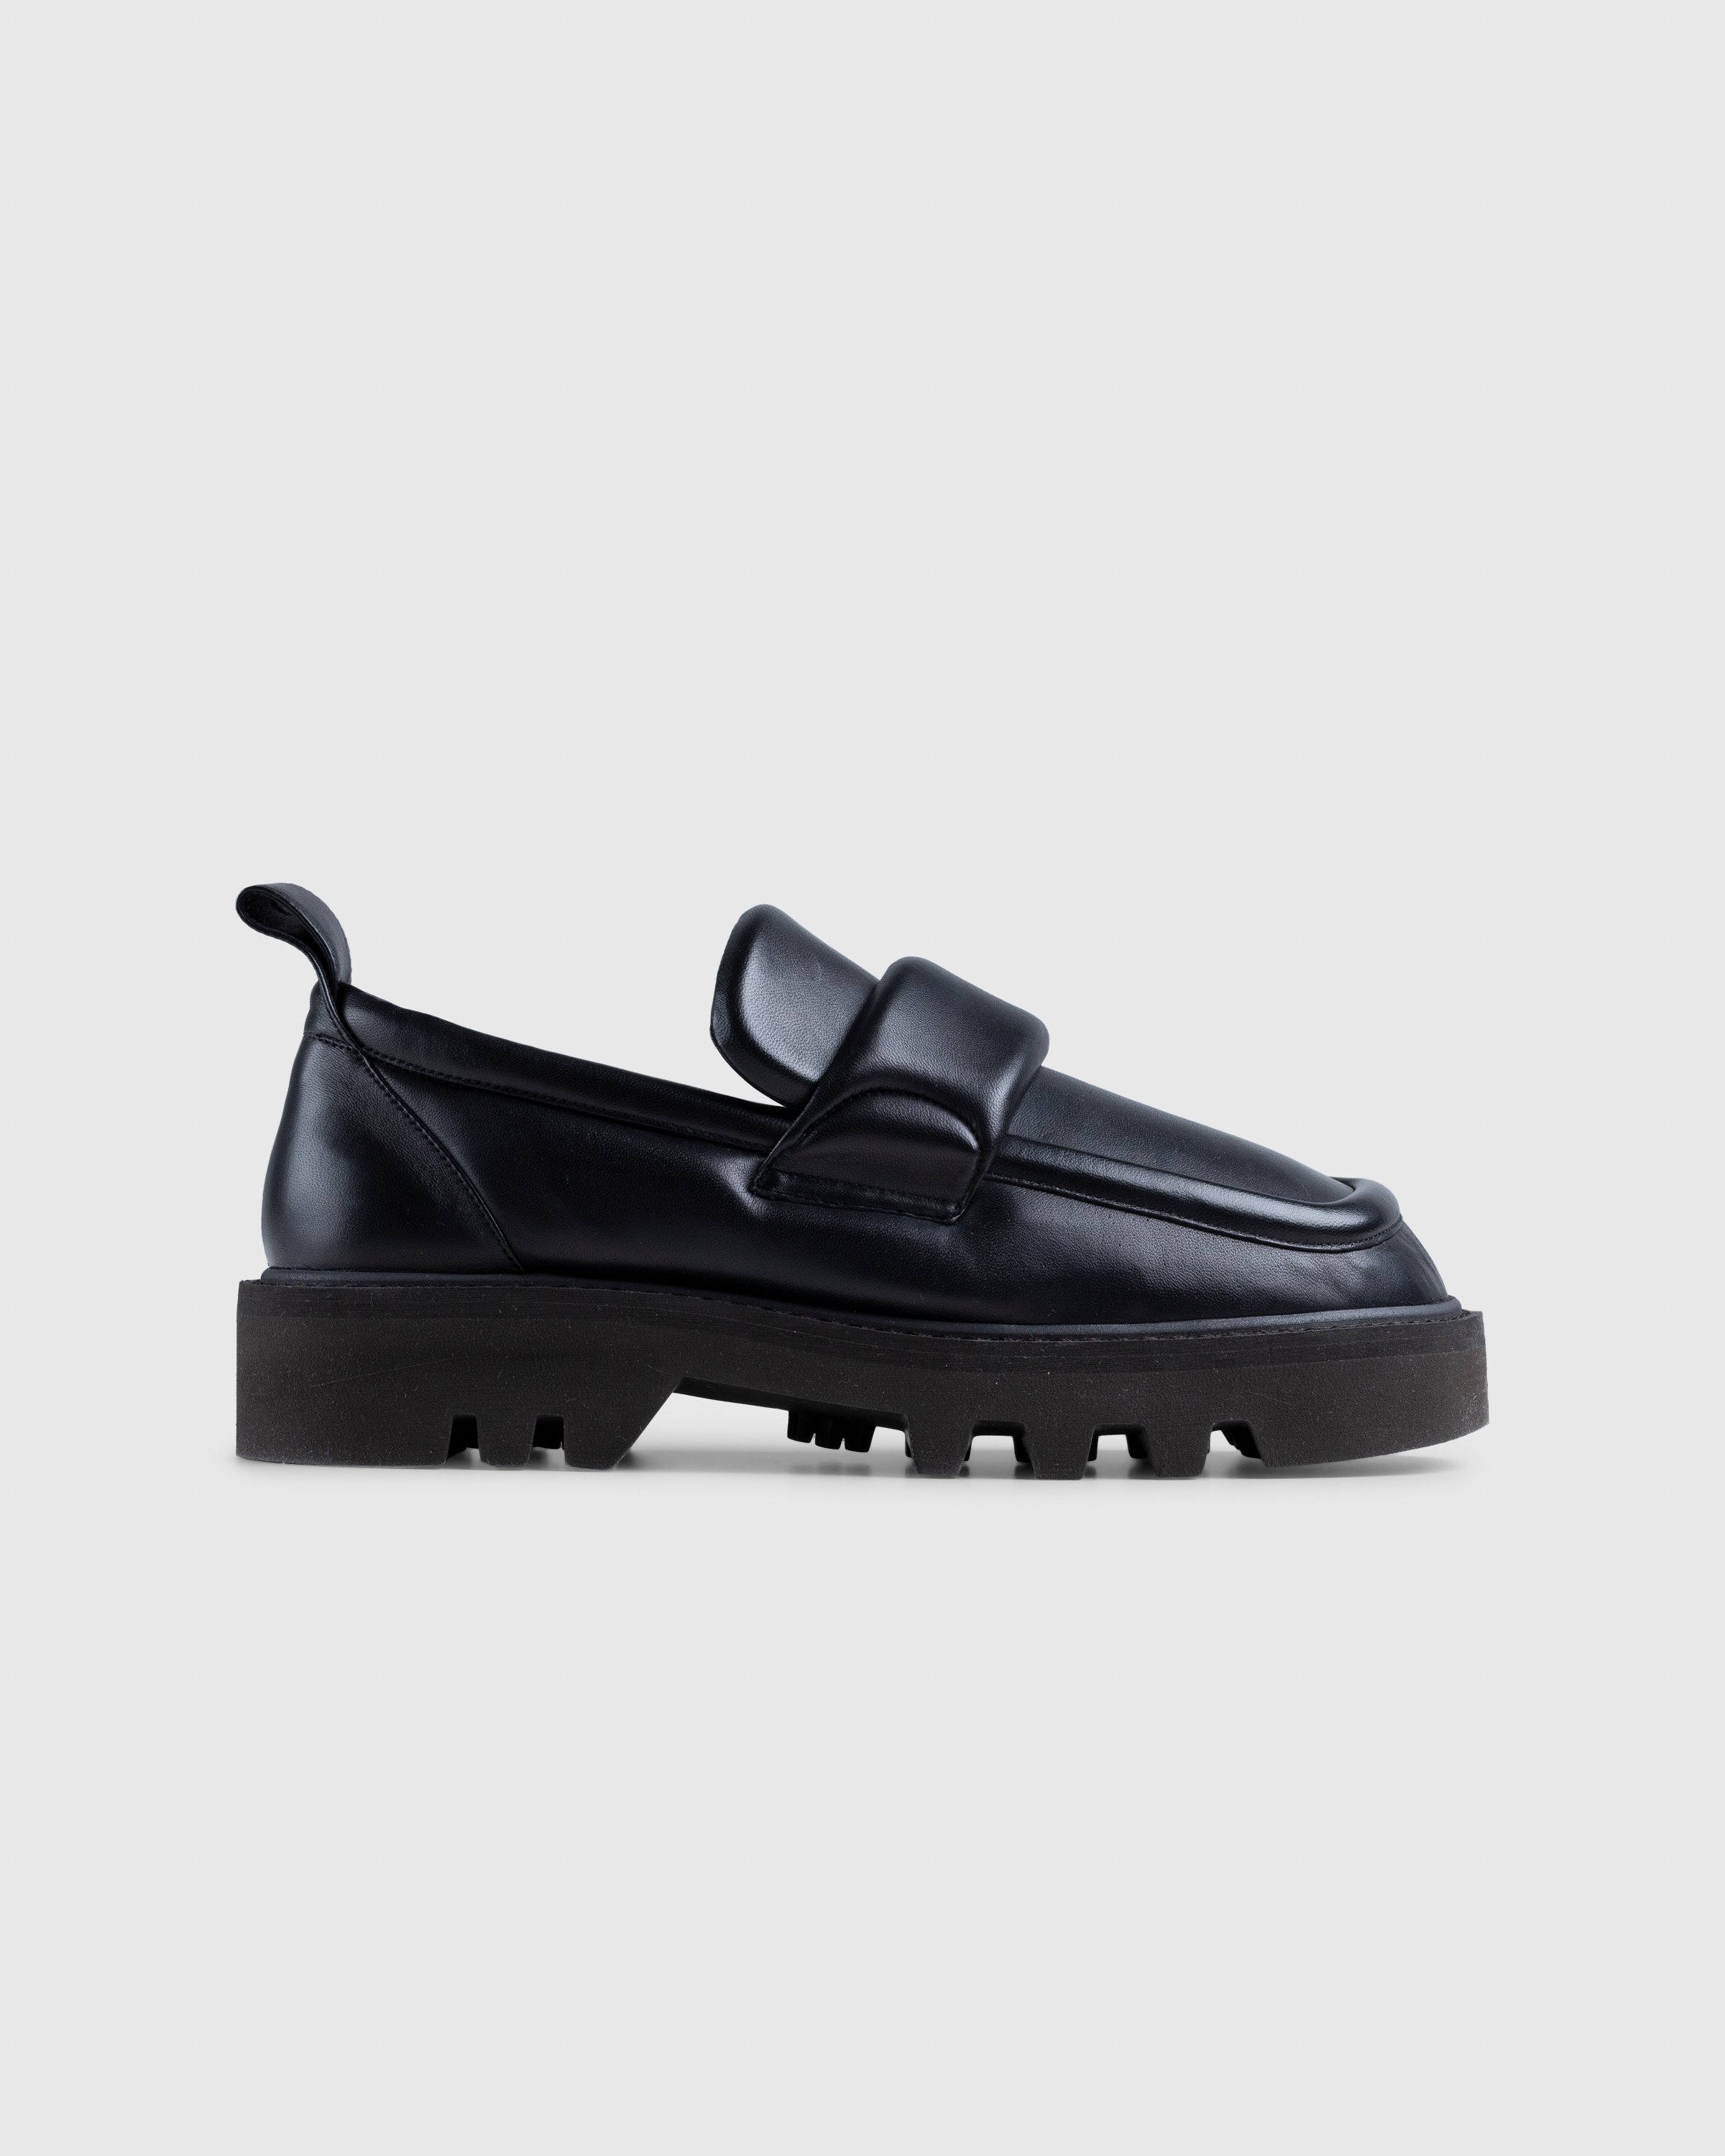 Dries van Noten - Padded Leather Loafers Black - Footwear - Black - Image 1